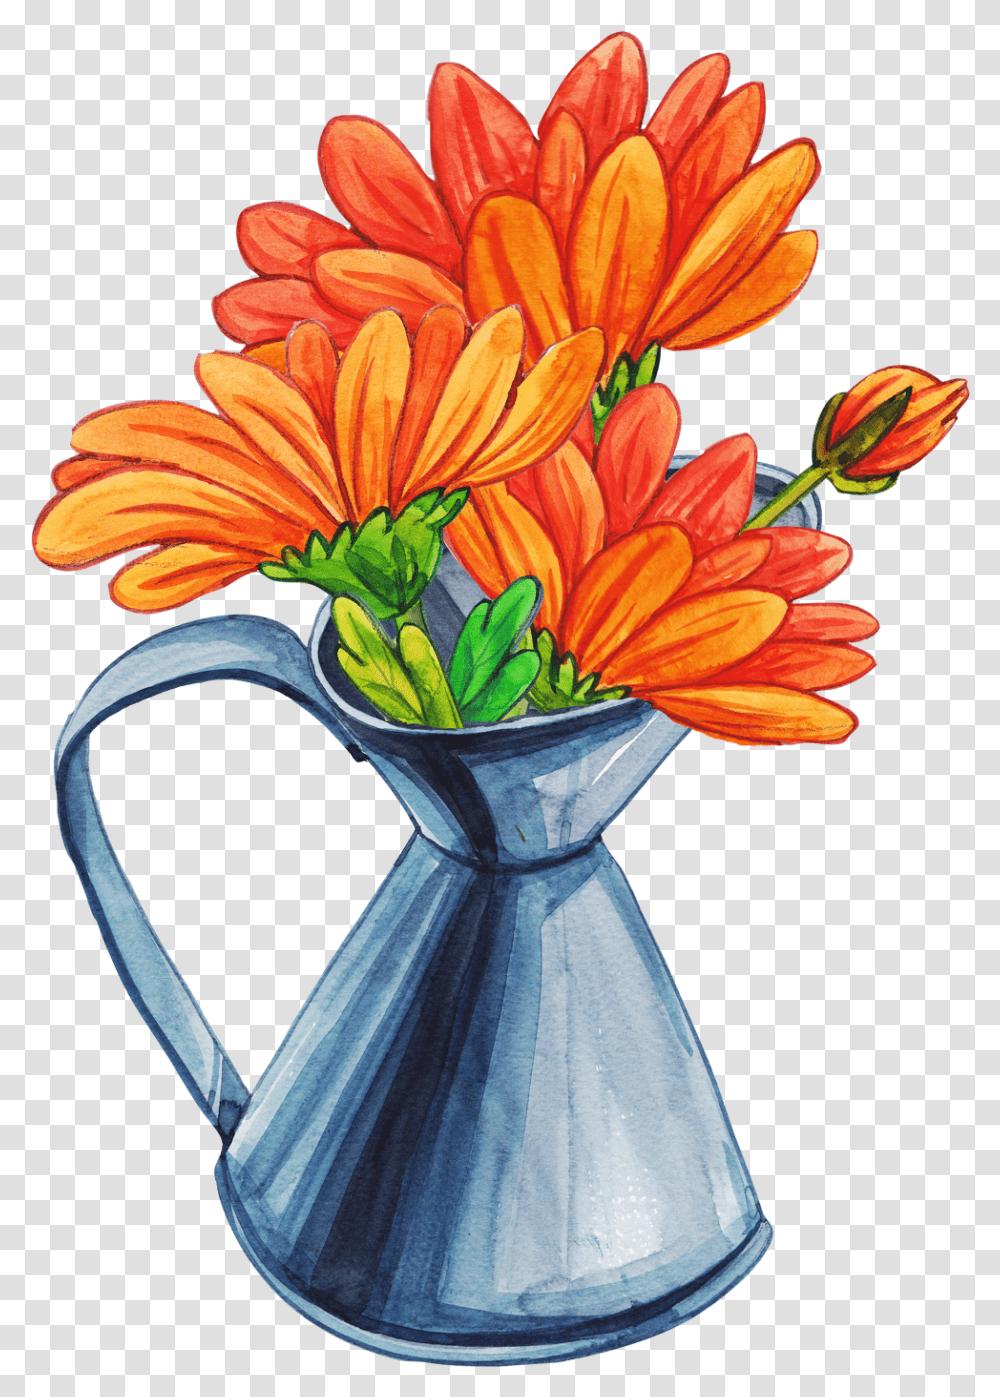 Orange Bouquet Flowers In A Vase Cartoon, Plant, Blossom, Flower Arrangement, Flower Bouquet Transparent Png